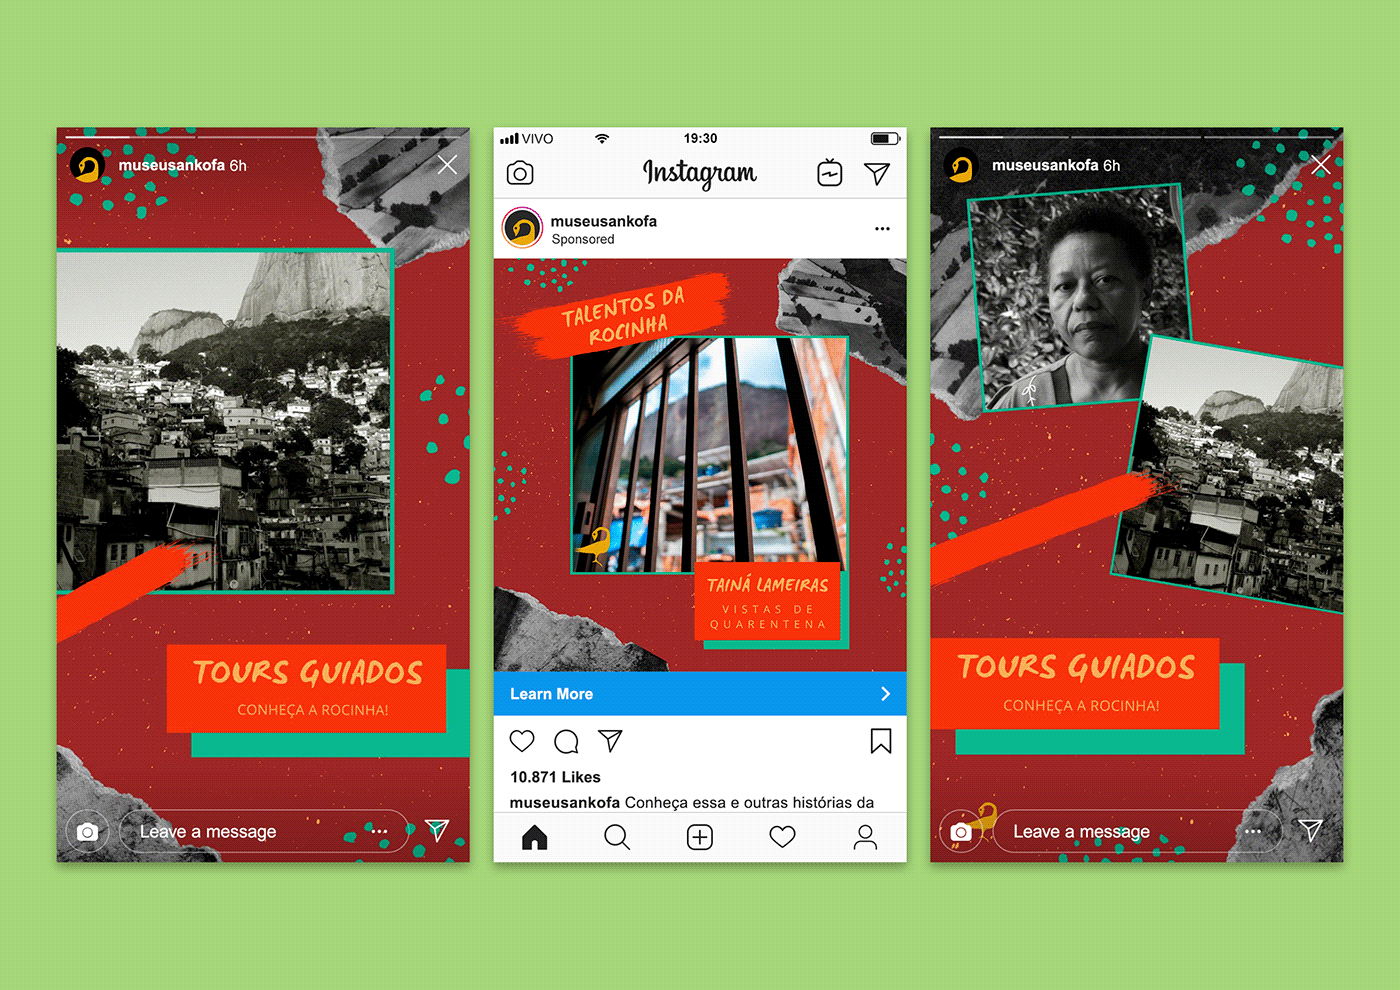 Três exemplos de posts do Instagram: dois stories nas laterais e um post de feed ao centro.